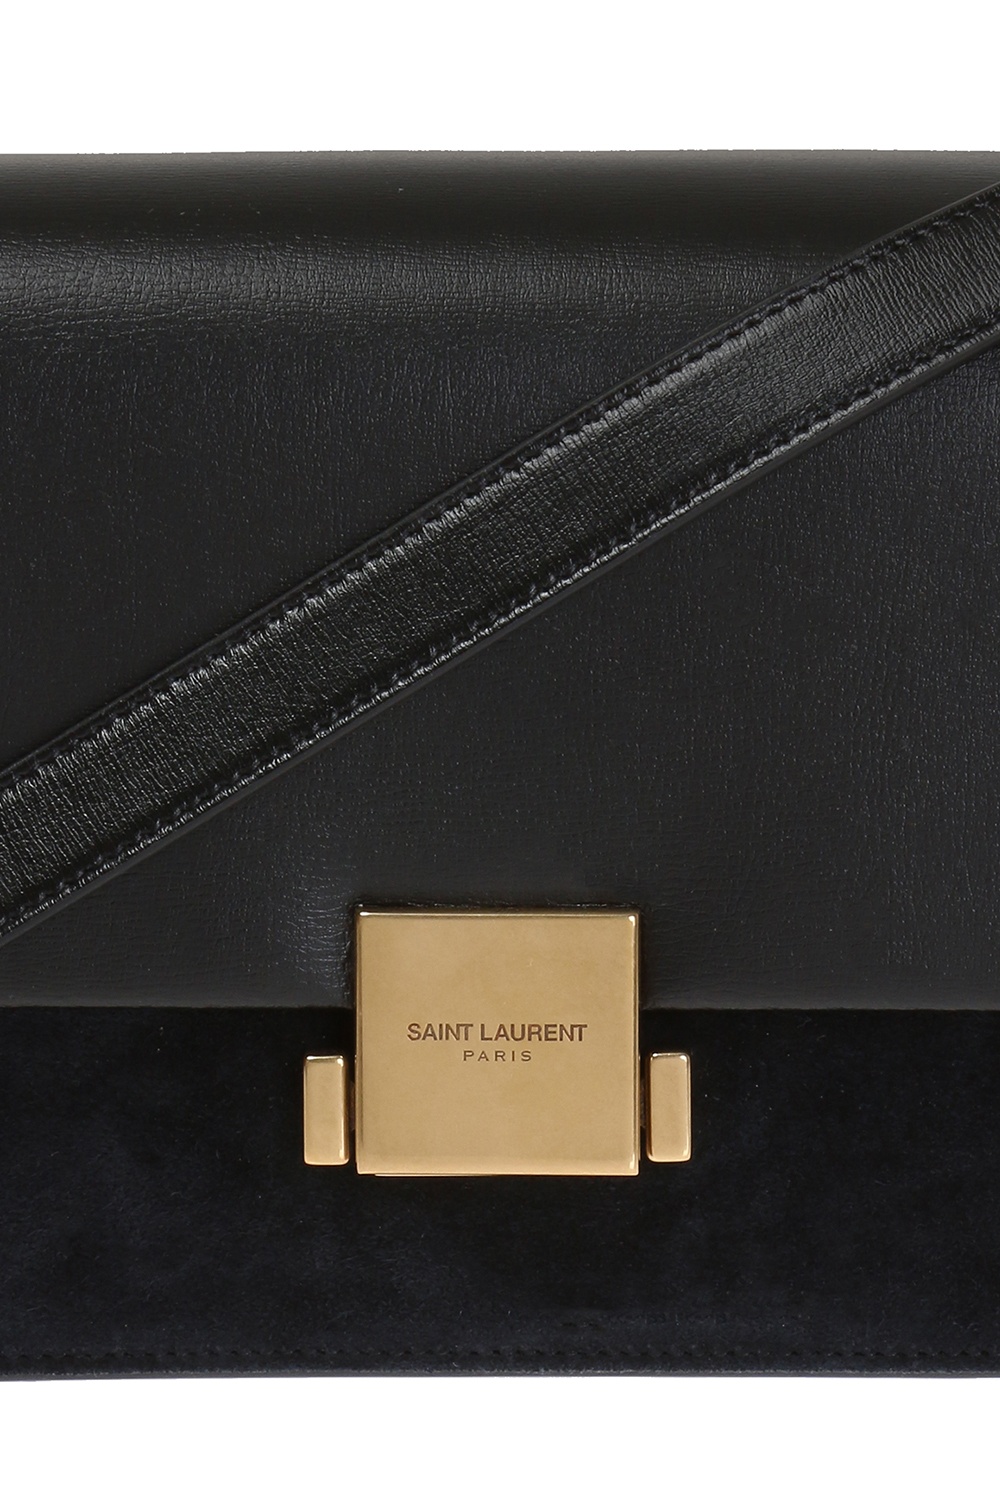 Louis Vuitton - Sandals - Size: Shoes / EU 42, UK 7,5 - Catawiki